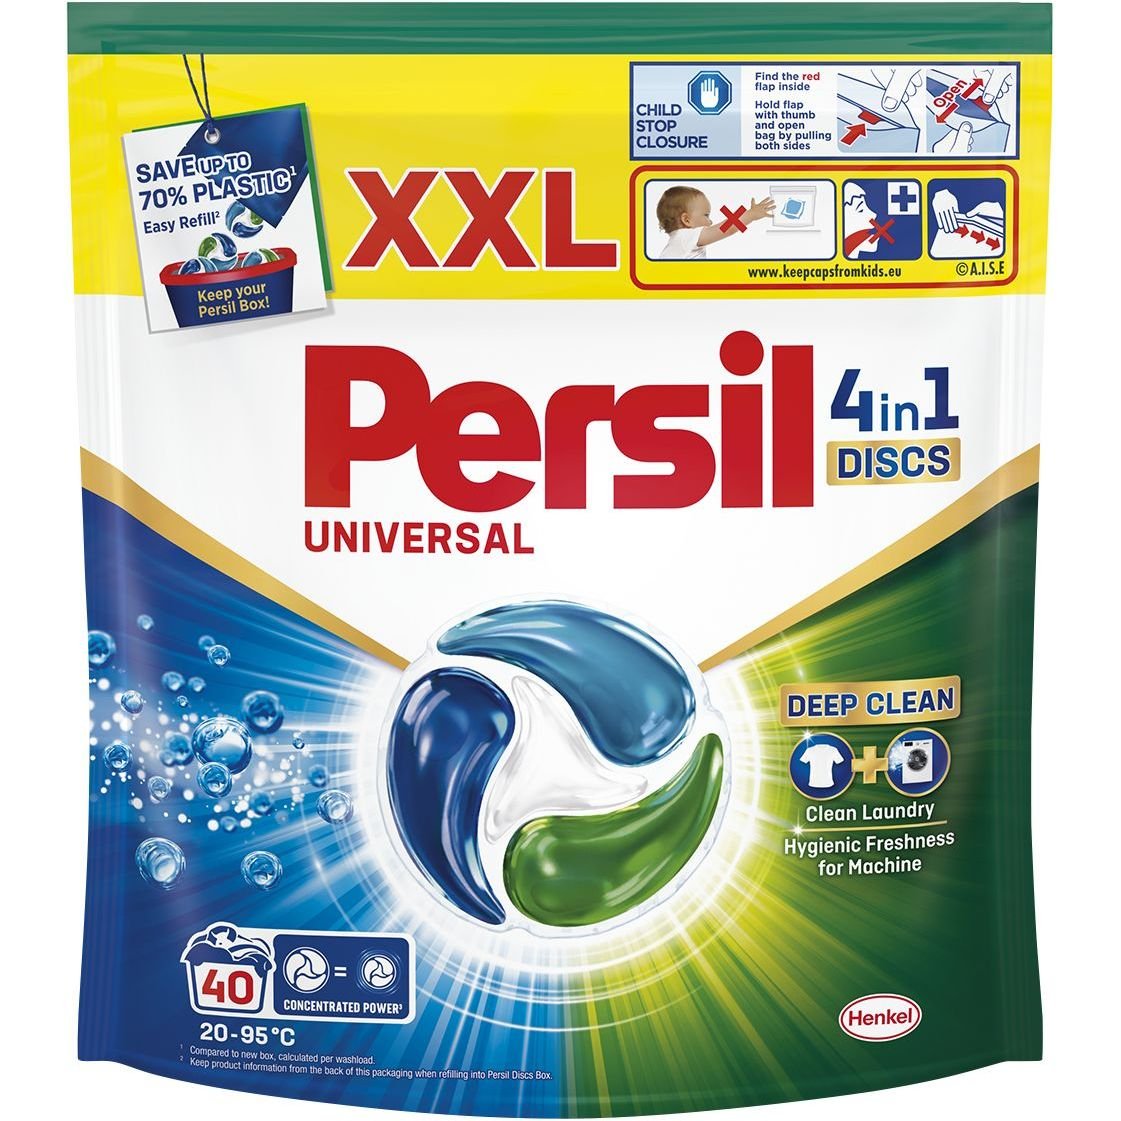 Диски для прання Persil Deep Cleen Universal 4 in 1 Discs 40 шт. - фото 1